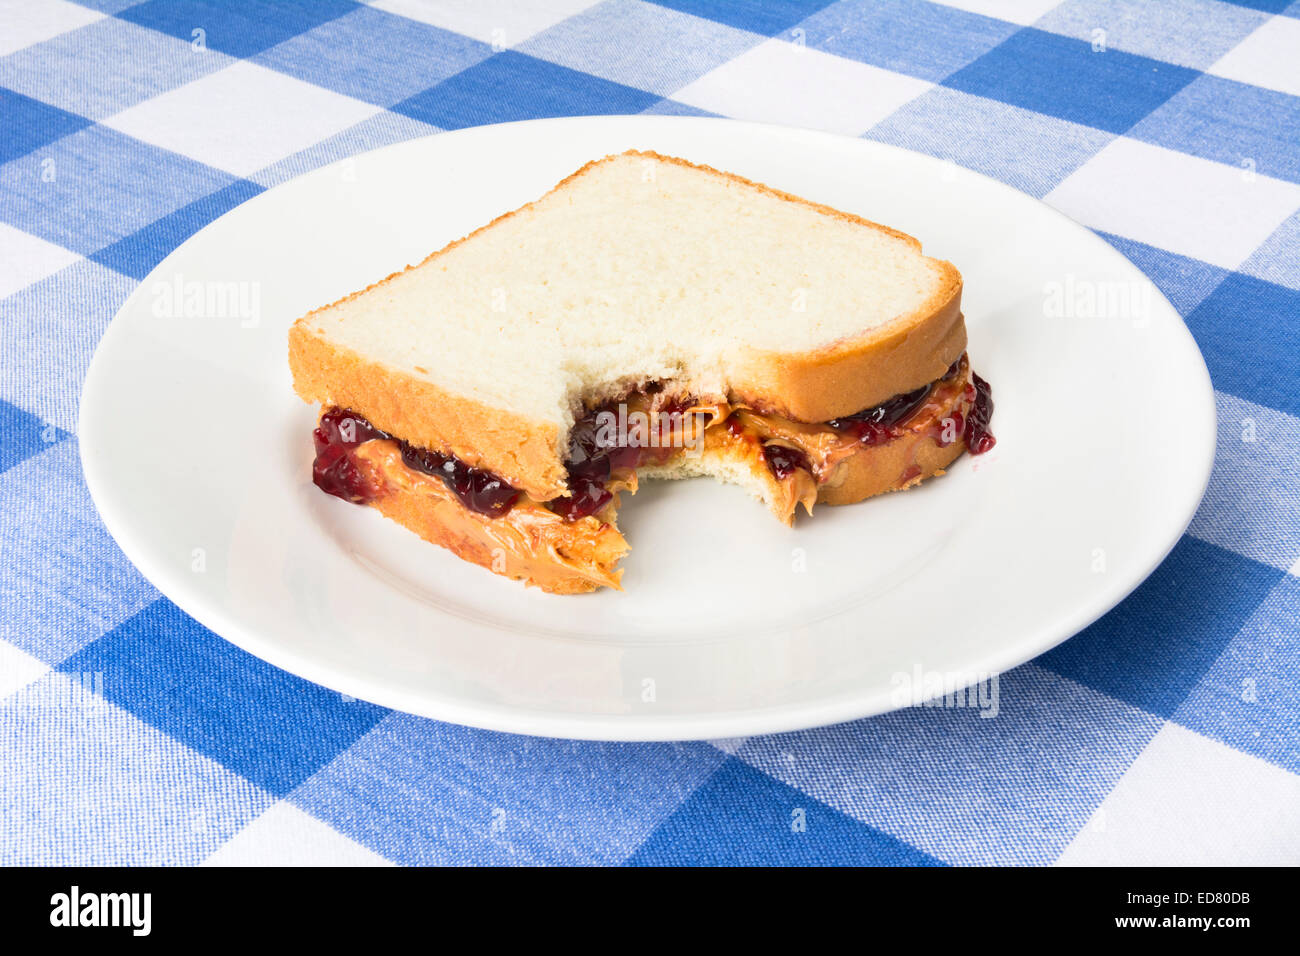 Un delizioso burro di arachidi e jelly sandwich con marmellata di uva ha un morso preso fuori di esso durante la pausa pranzo. Foto Stock